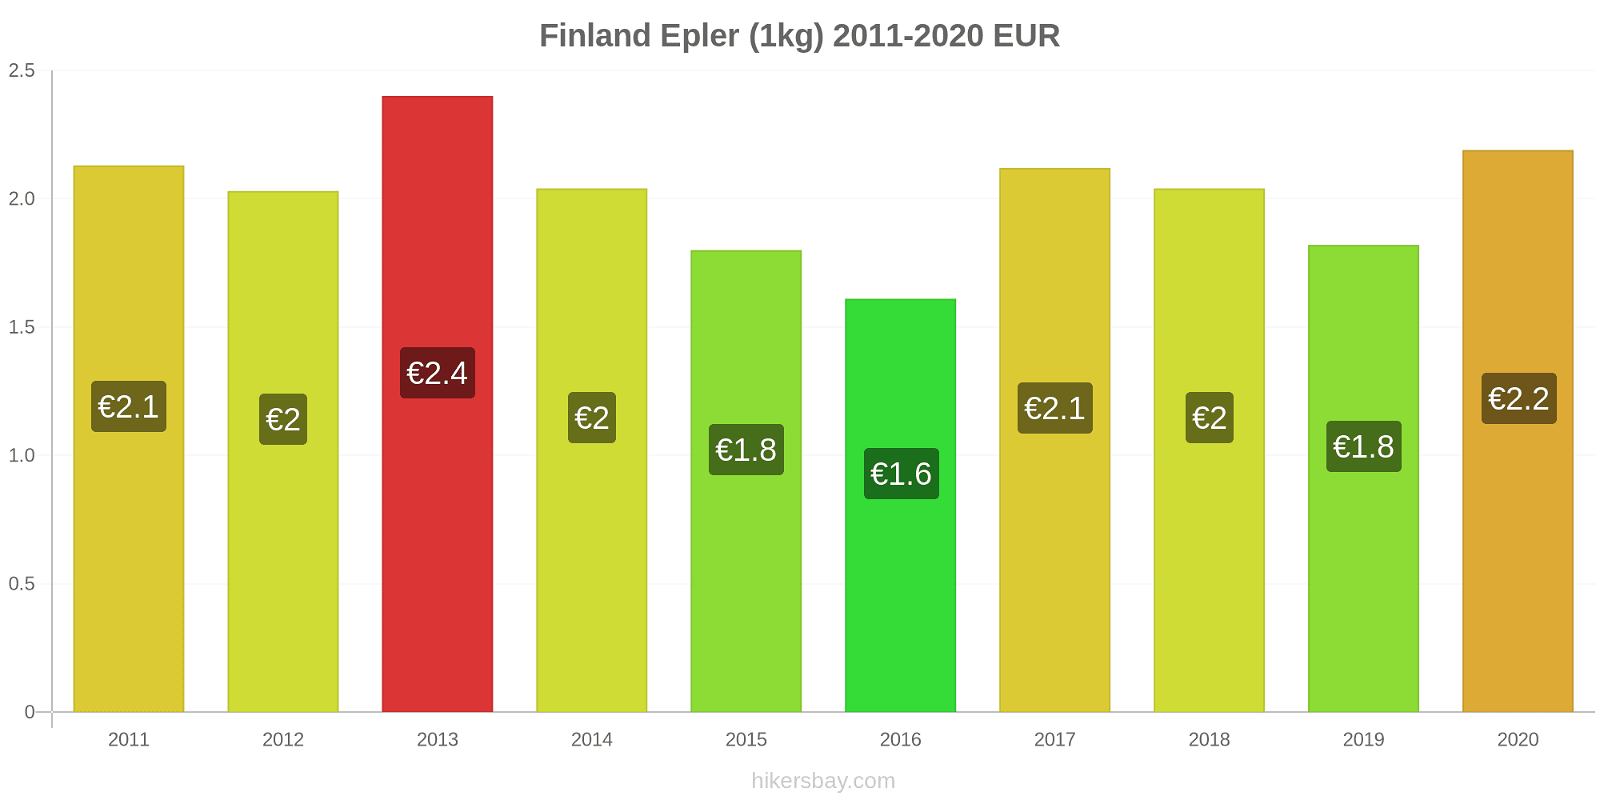 Finland prisendringer Epler (1kg) hikersbay.com